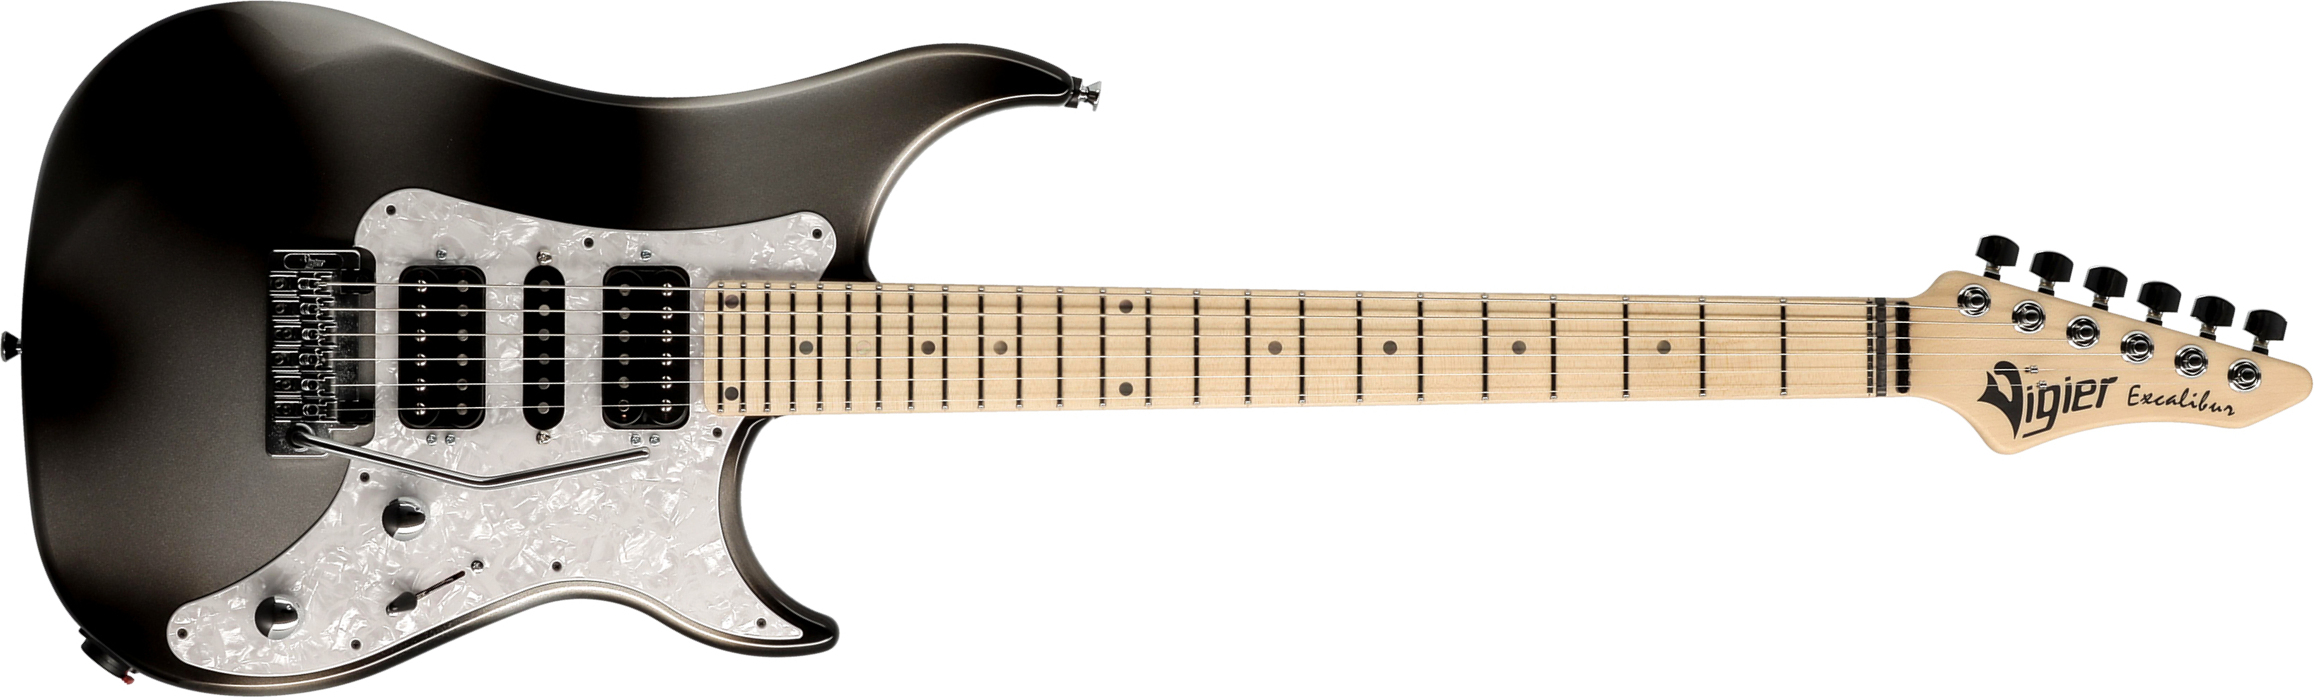 Vigier Excalibur Supraa Hsh Trem Mn - Urban Metal - Elektrische gitaar in Str-vorm - Main picture